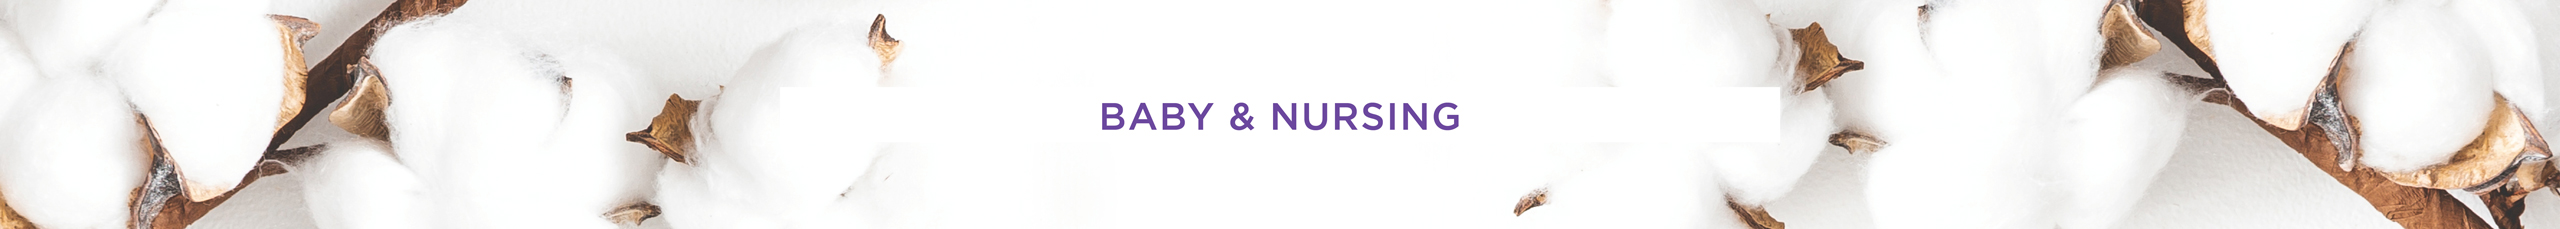 Swisspers Baby Nursing